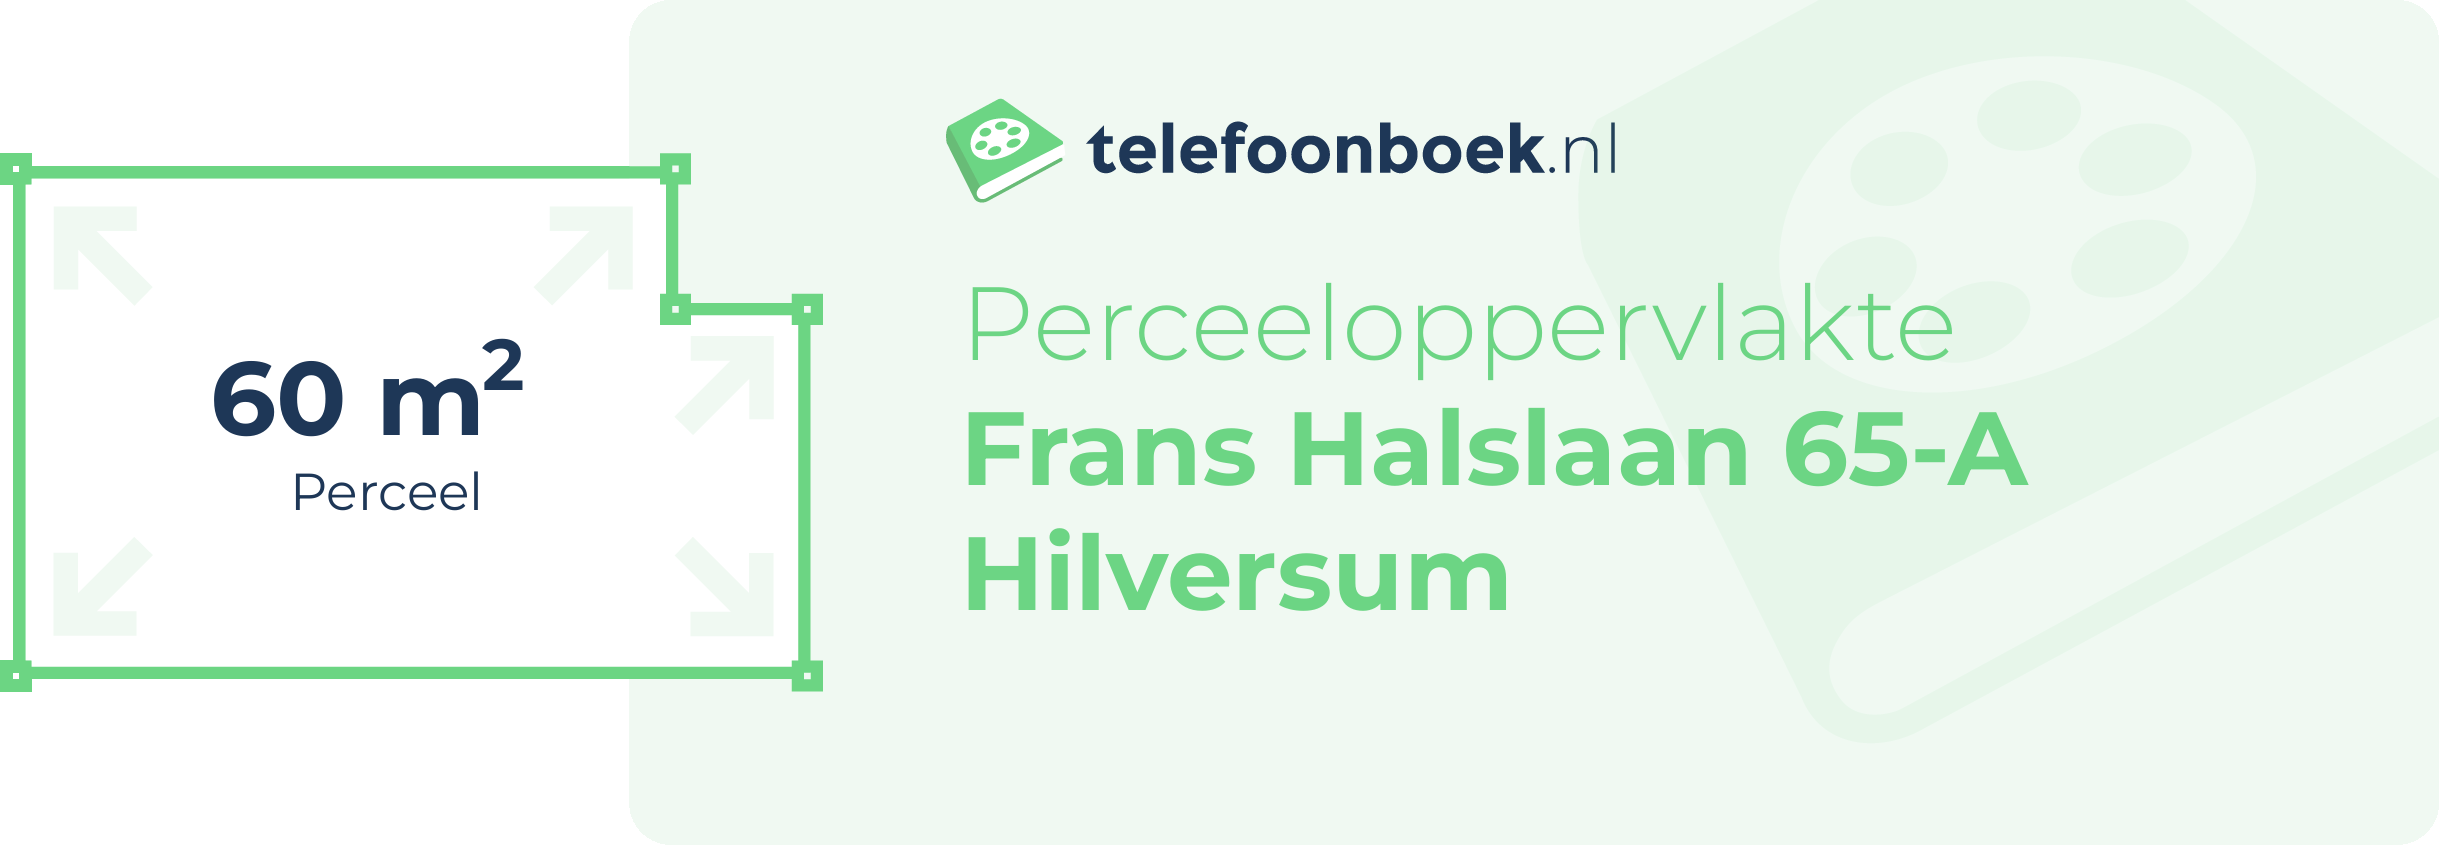 Perceeloppervlakte Frans Halslaan 65-A Hilversum